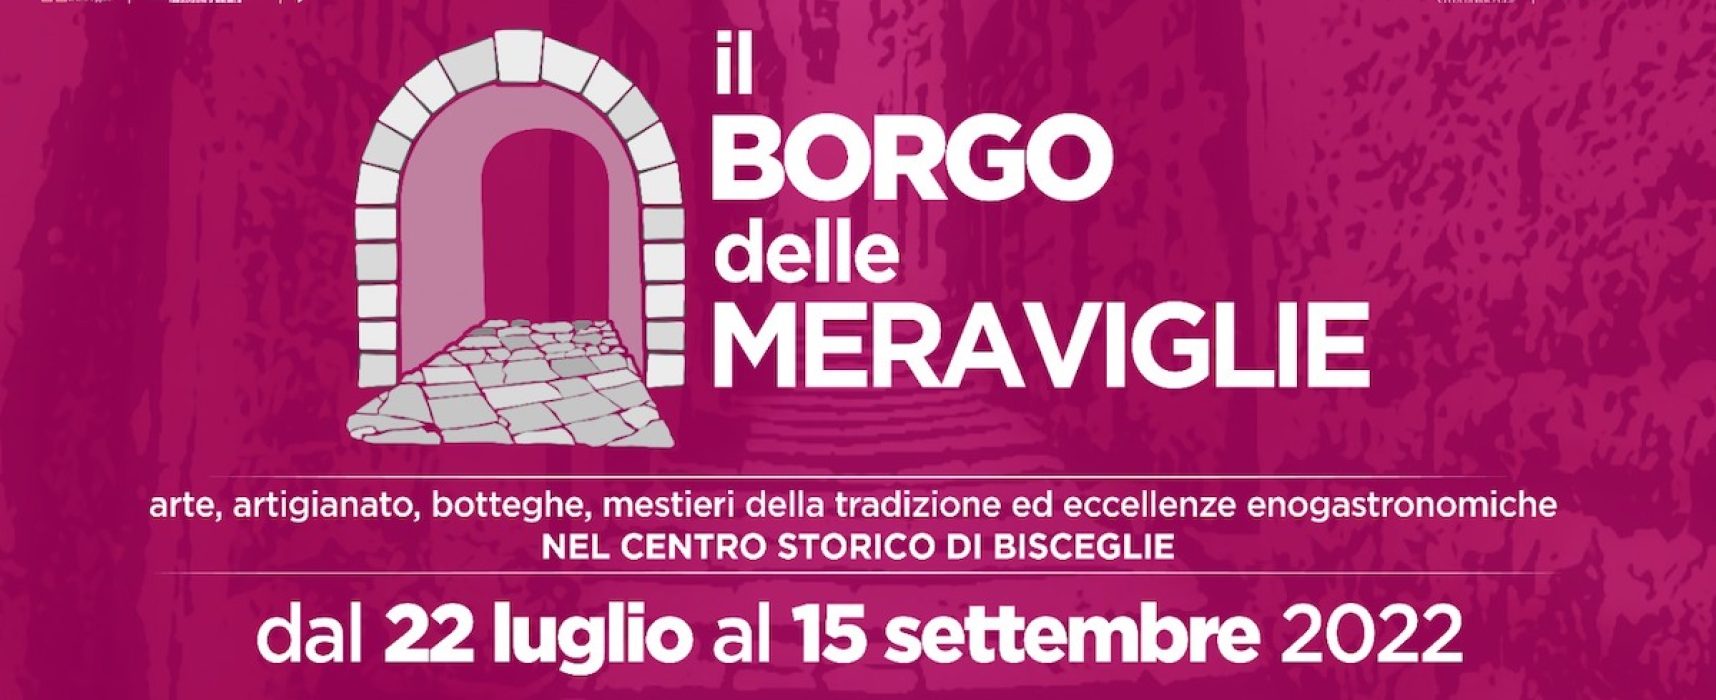 Borgo delle Meraviglie torna con terza edizione: avviso pubblico per locali nel centro storico